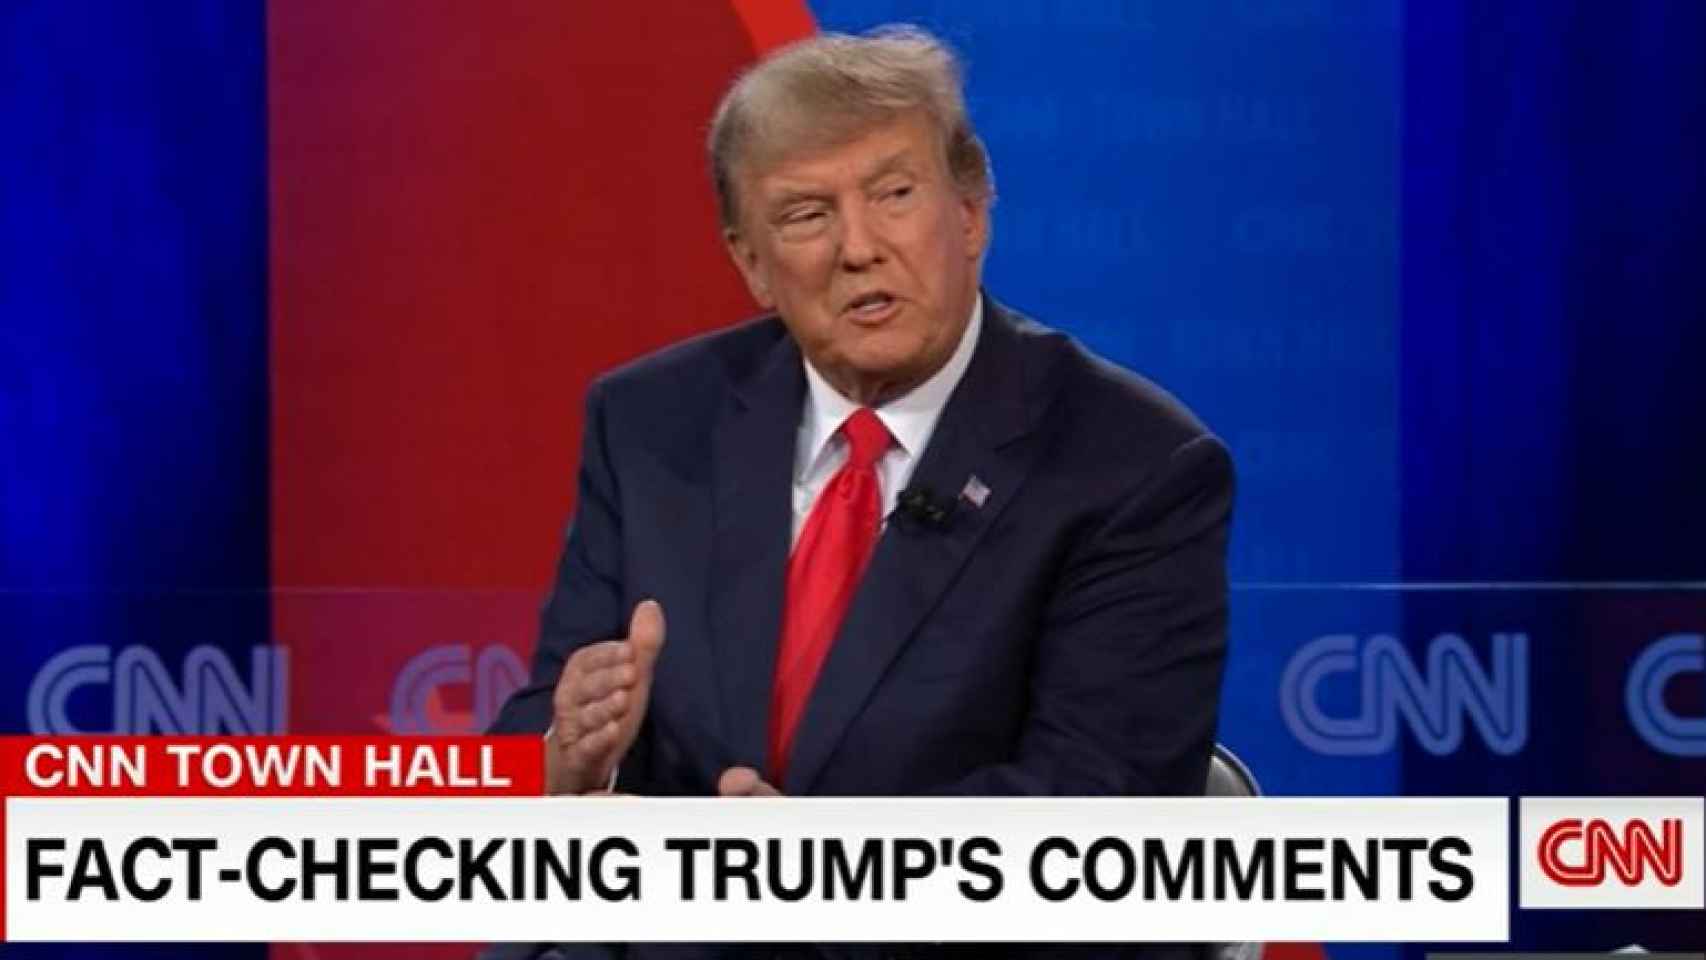 Donald Trump durante su entrevista en la CNN.